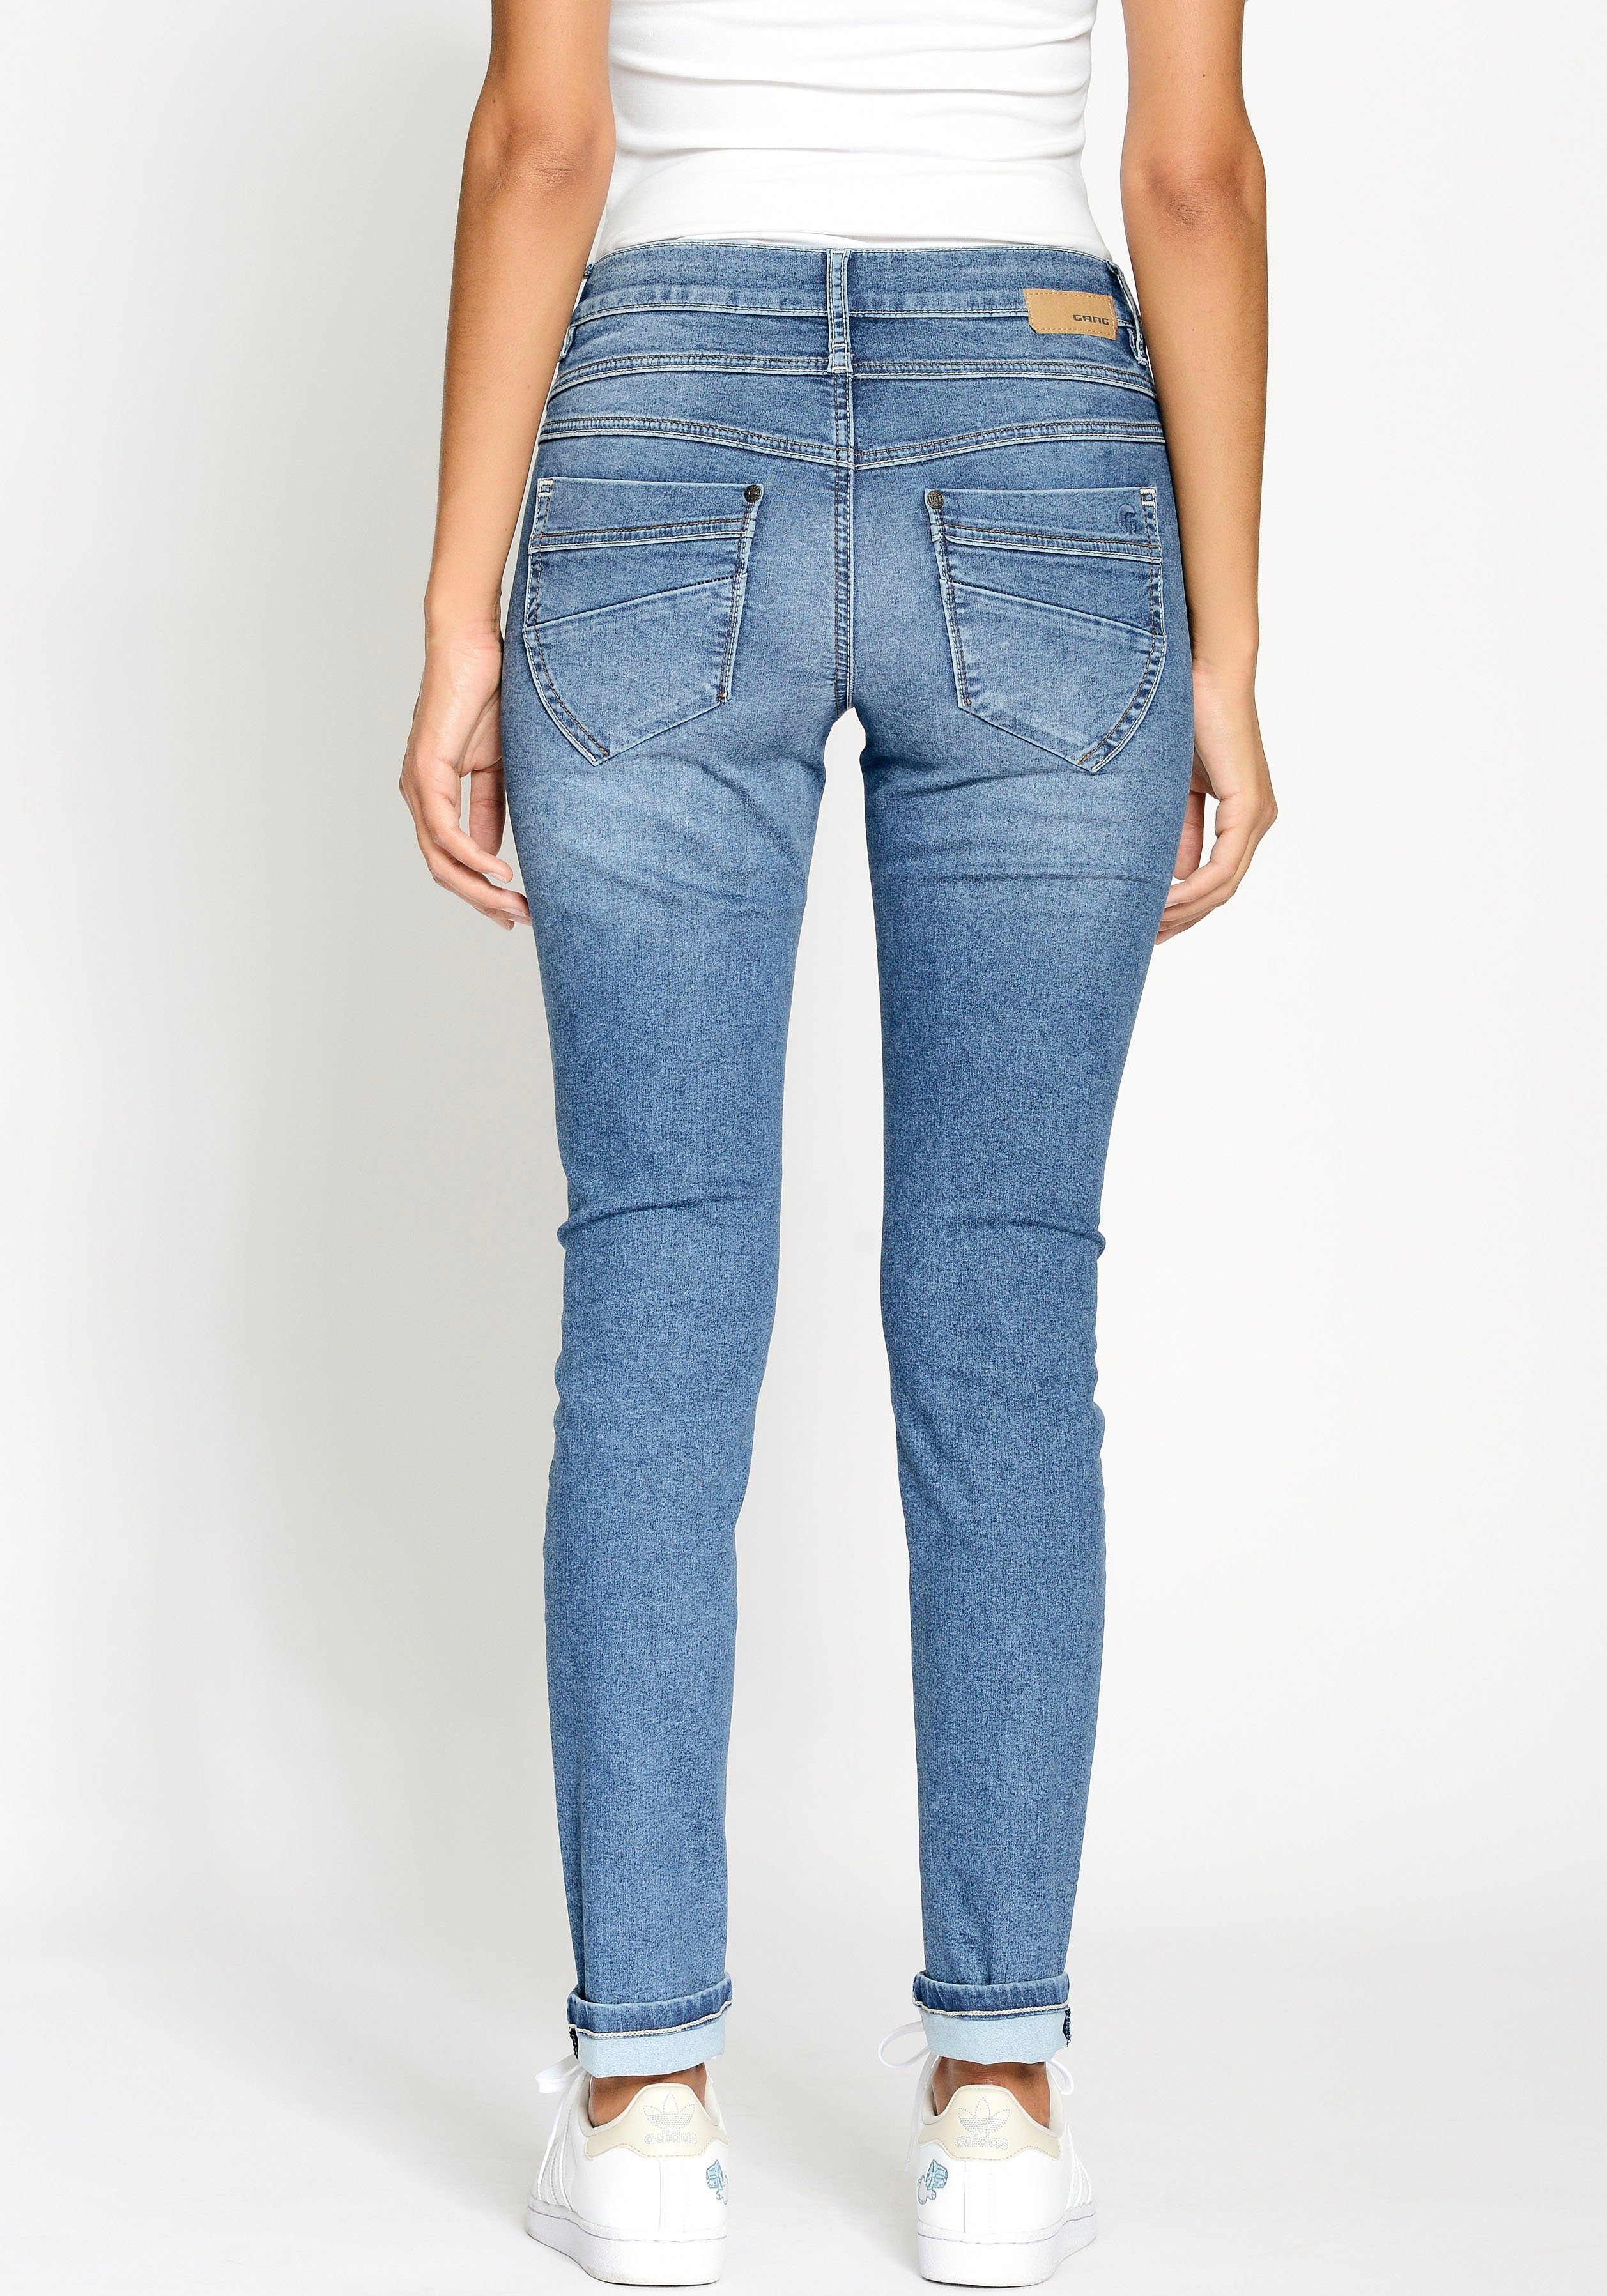 GANG Skinny-fit-Jeans 94MORA mit all medium vorne 3-Knopf-Verschluss blue und Passe